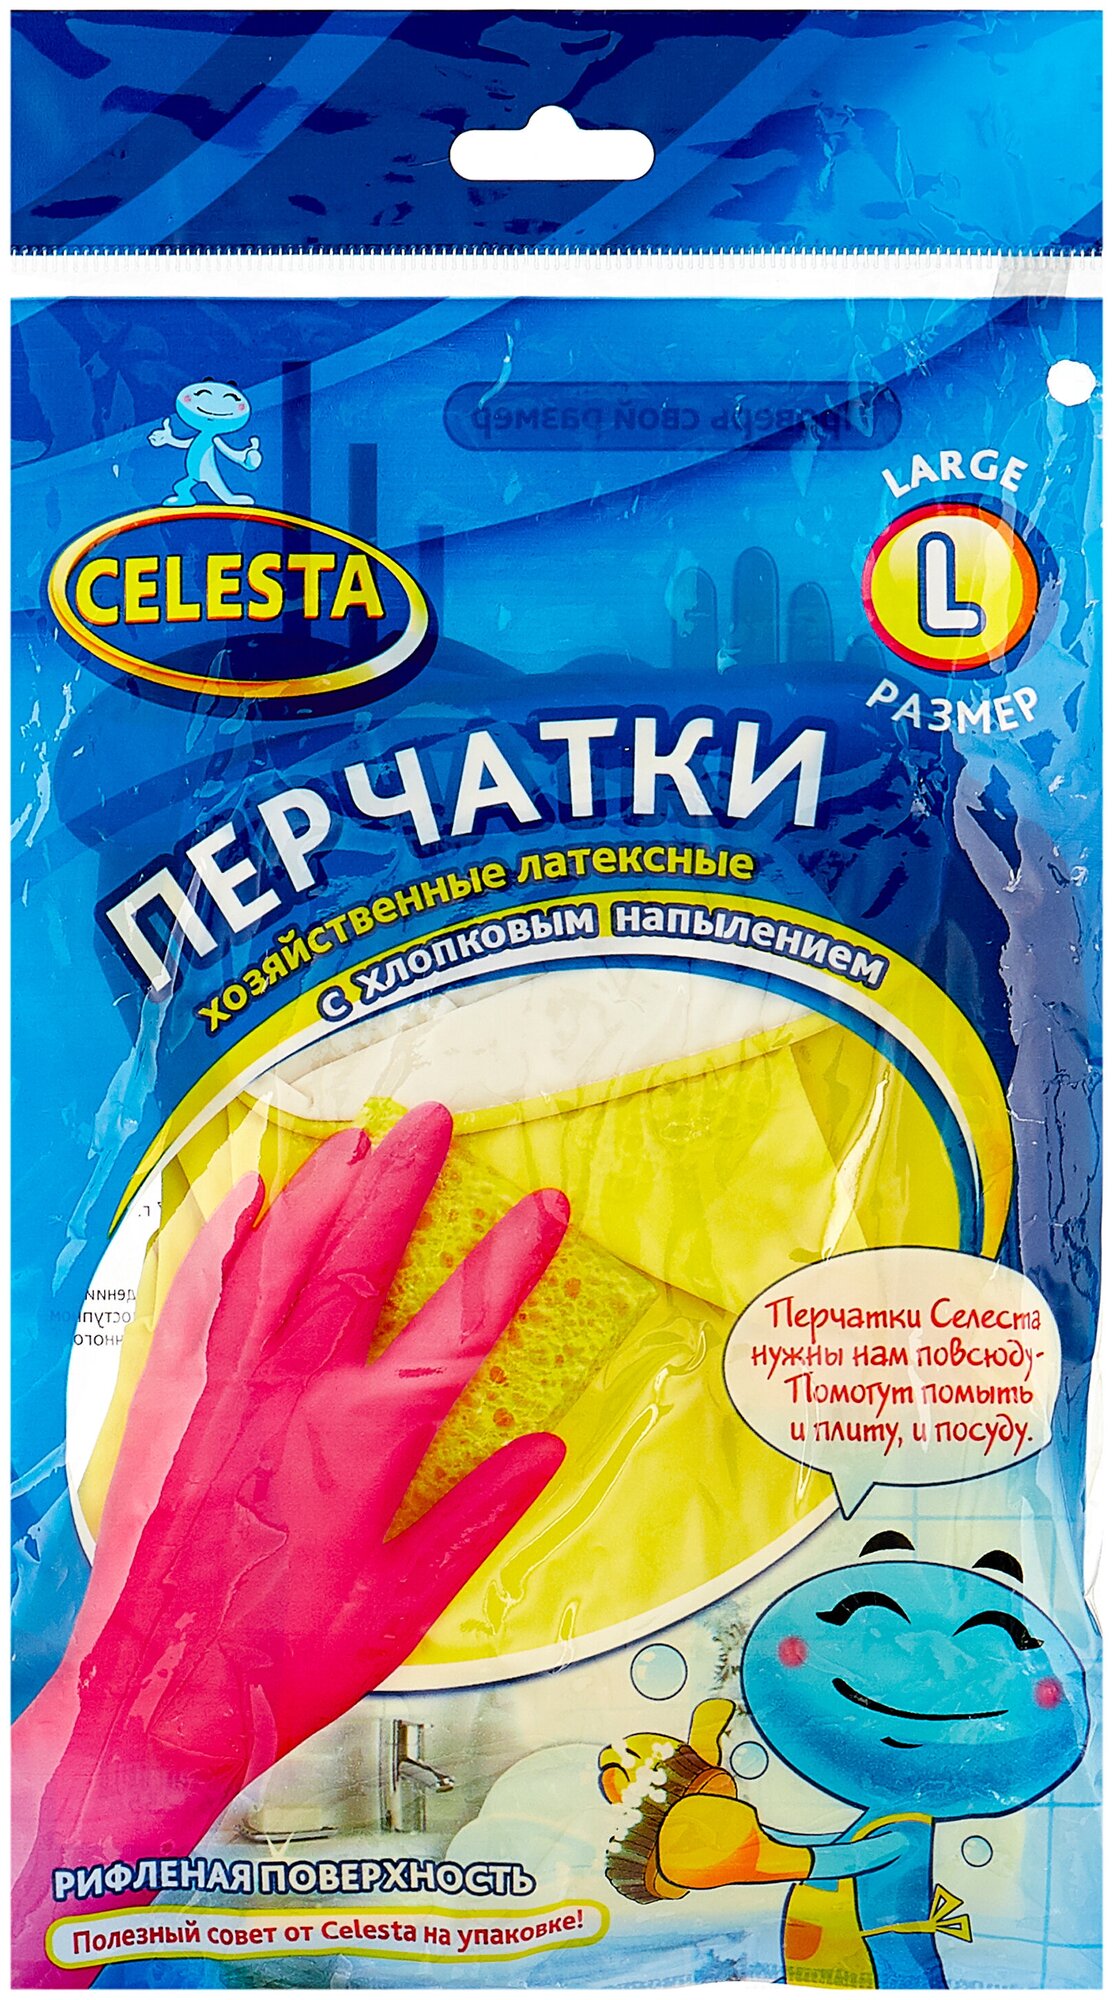 Перчатки Celesta хозяйственные латексные с хлопковым напылением